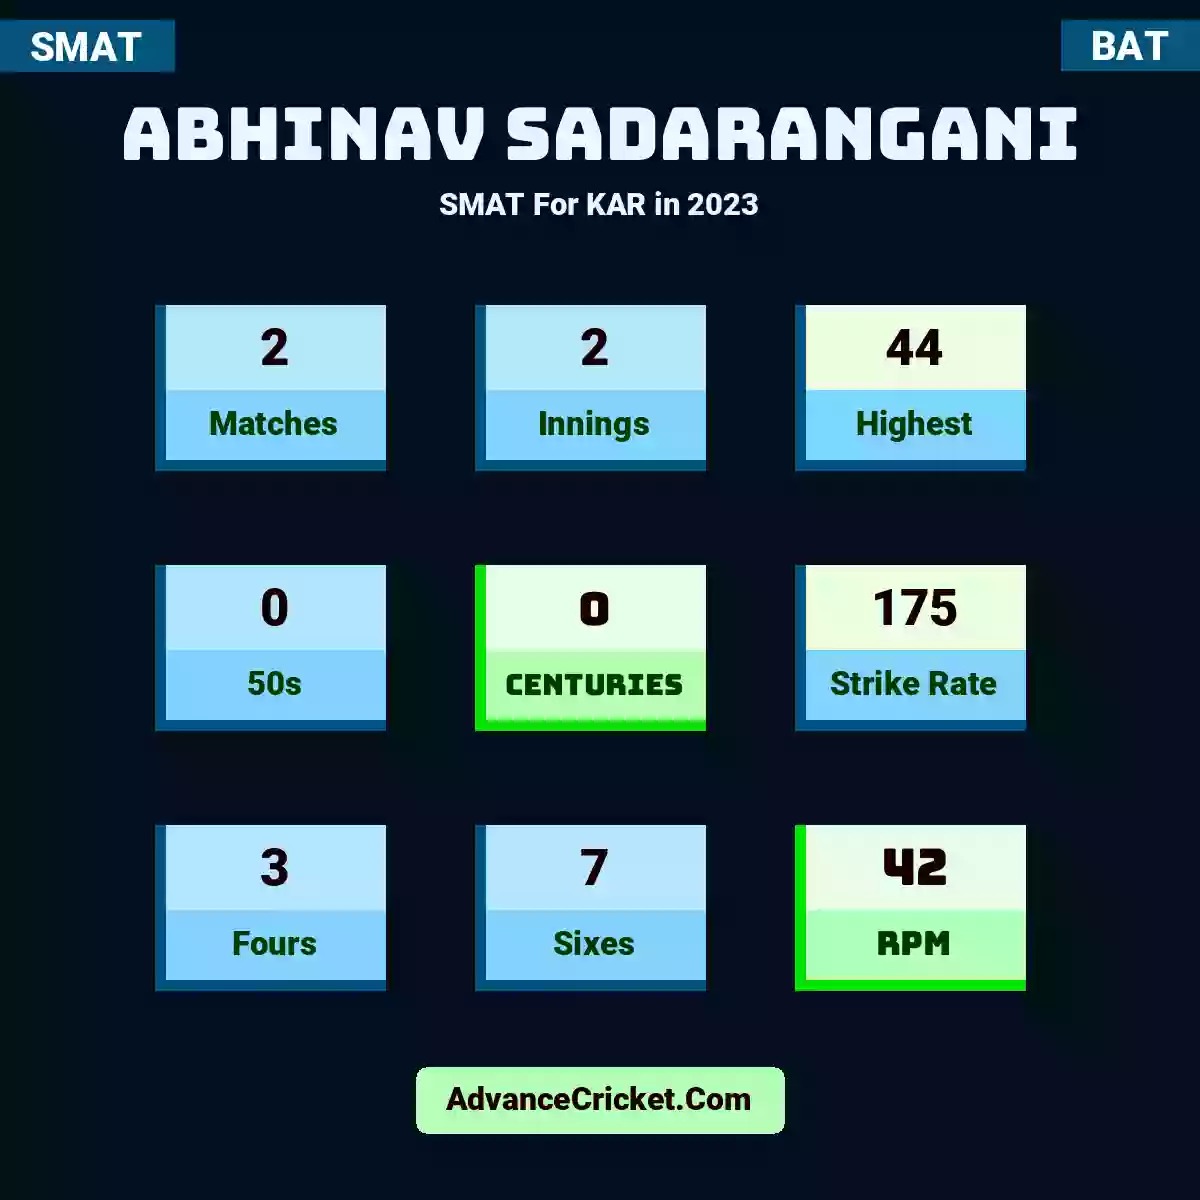 Abhinav Sadarangani SMAT  For KAR in 2023, Abhinav Sadarangani played 2 matches, scored 44 runs as highest, 0 half-centuries, and 0 centuries, with a strike rate of 175. A.Sadarangani hit 3 fours and 7 sixes, with an RPM of 42.